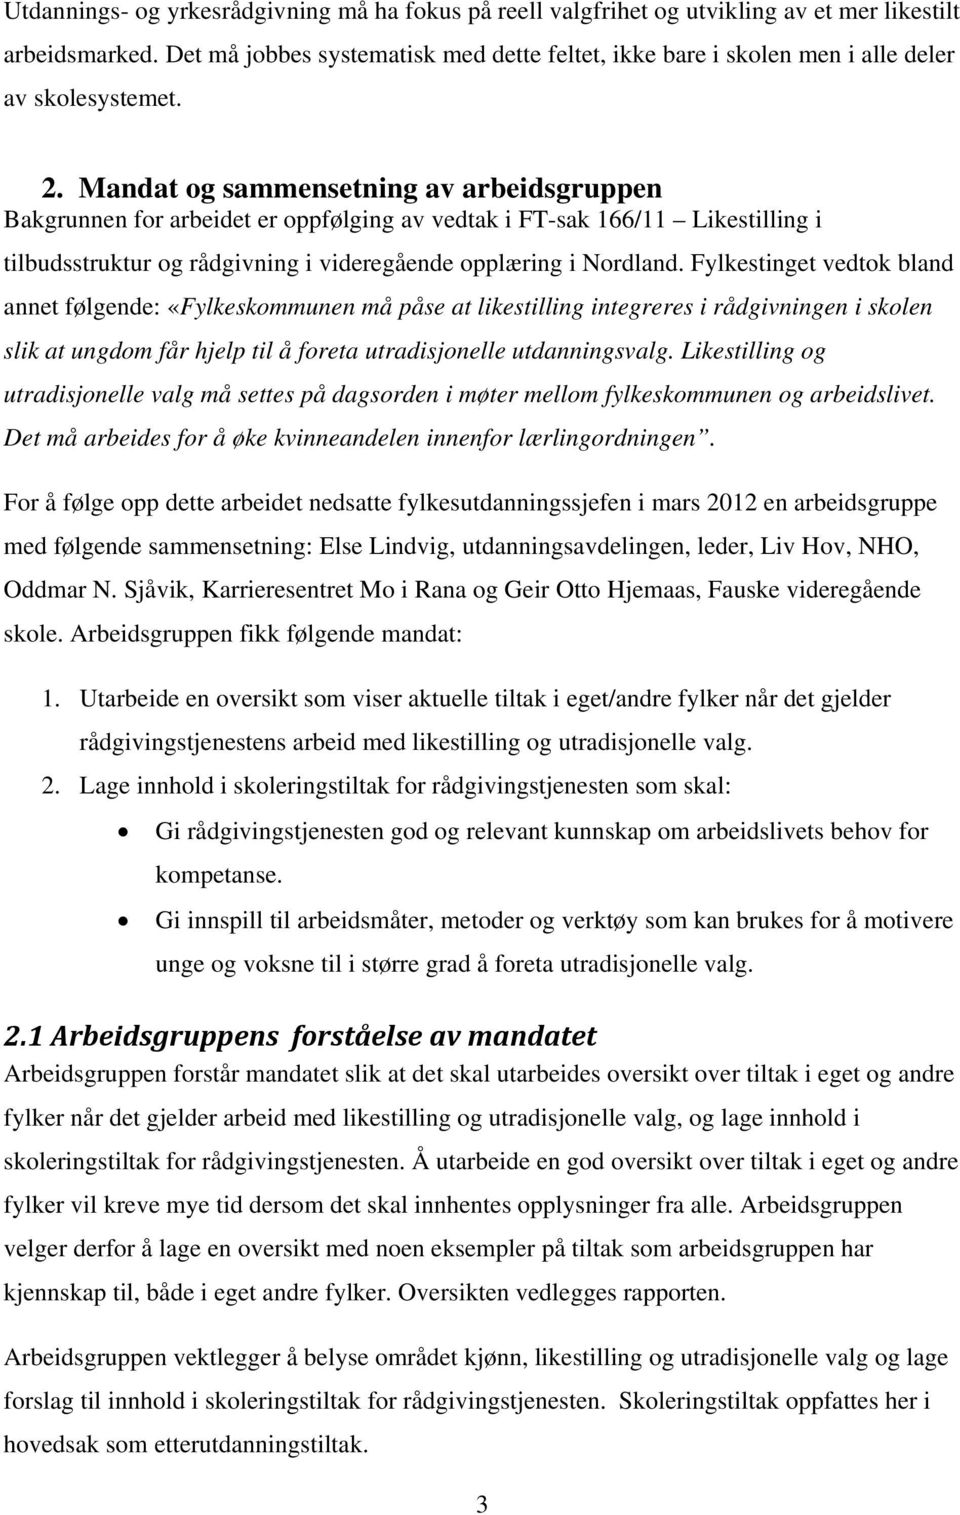 Mandat og sammensetning av arbeidsgruppen Bakgrunnen for arbeidet er oppfølging av vedtak i FT-sak 166/11 Likestilling i tilbudsstruktur og rådgivning i videregående opplæring i Nordland.